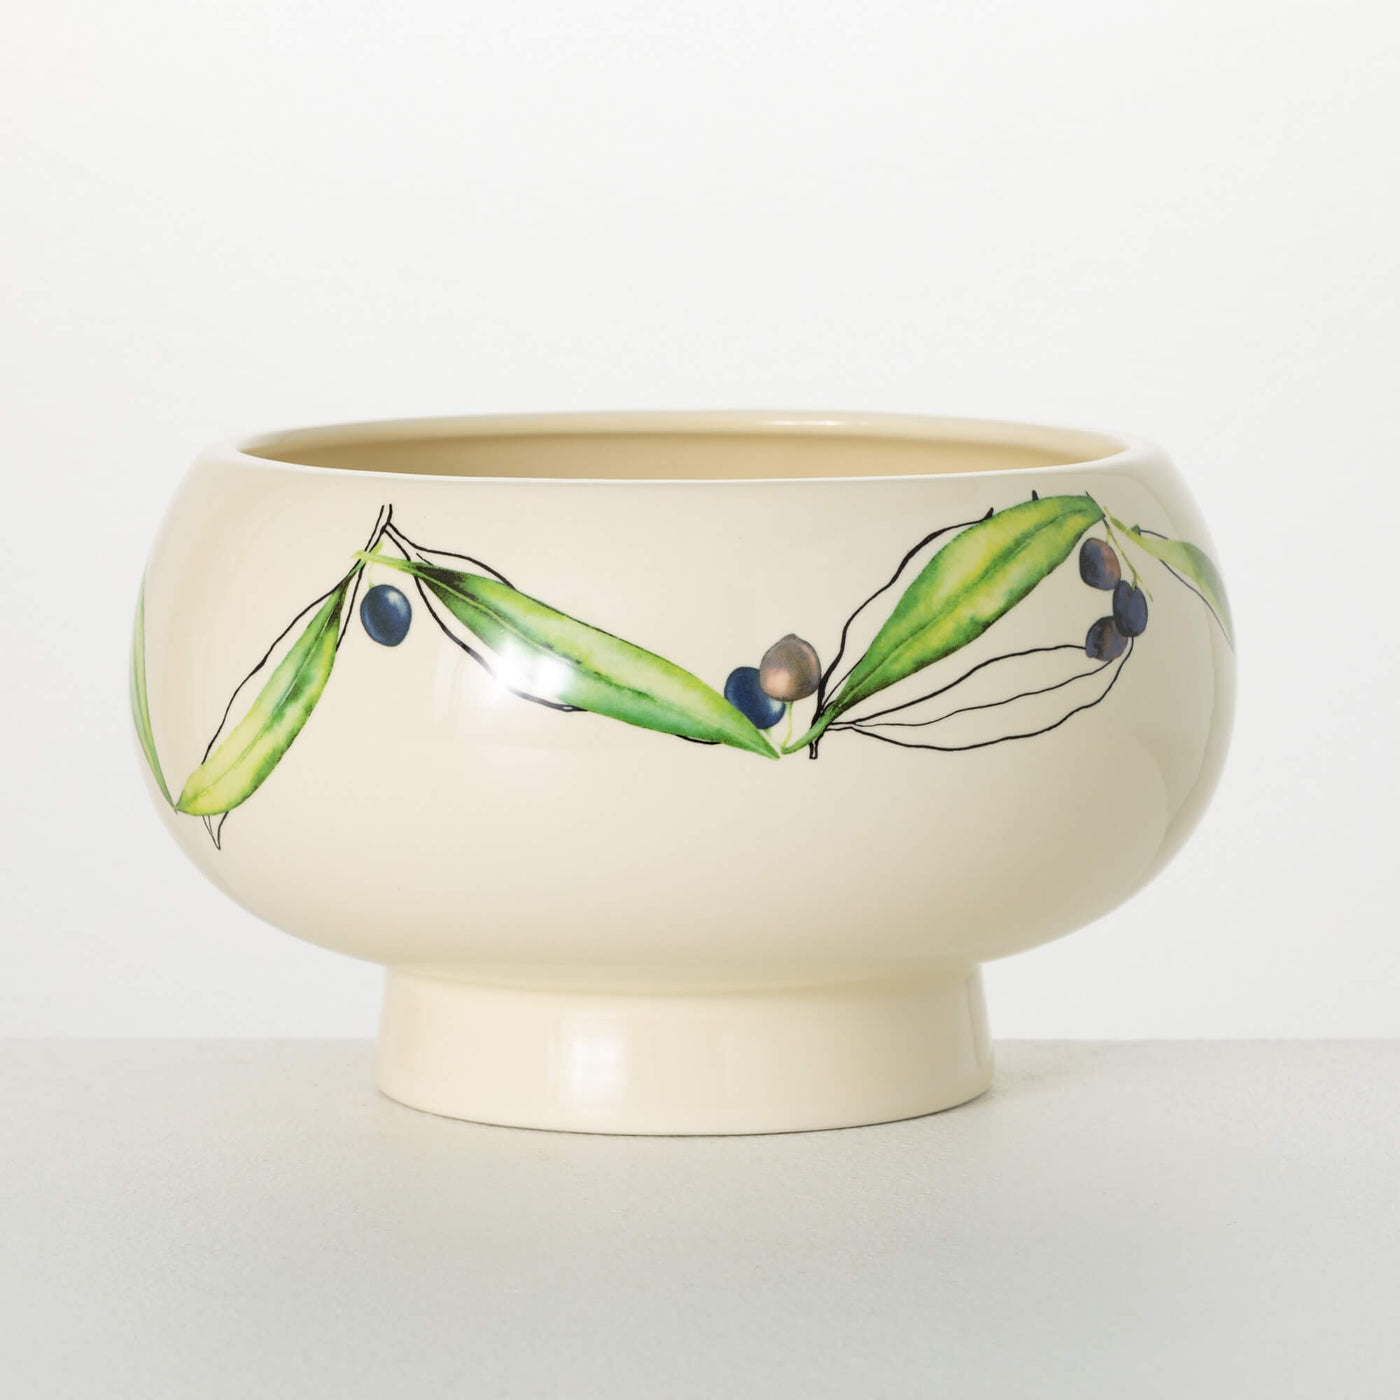 The Olive Pedestal Bowl